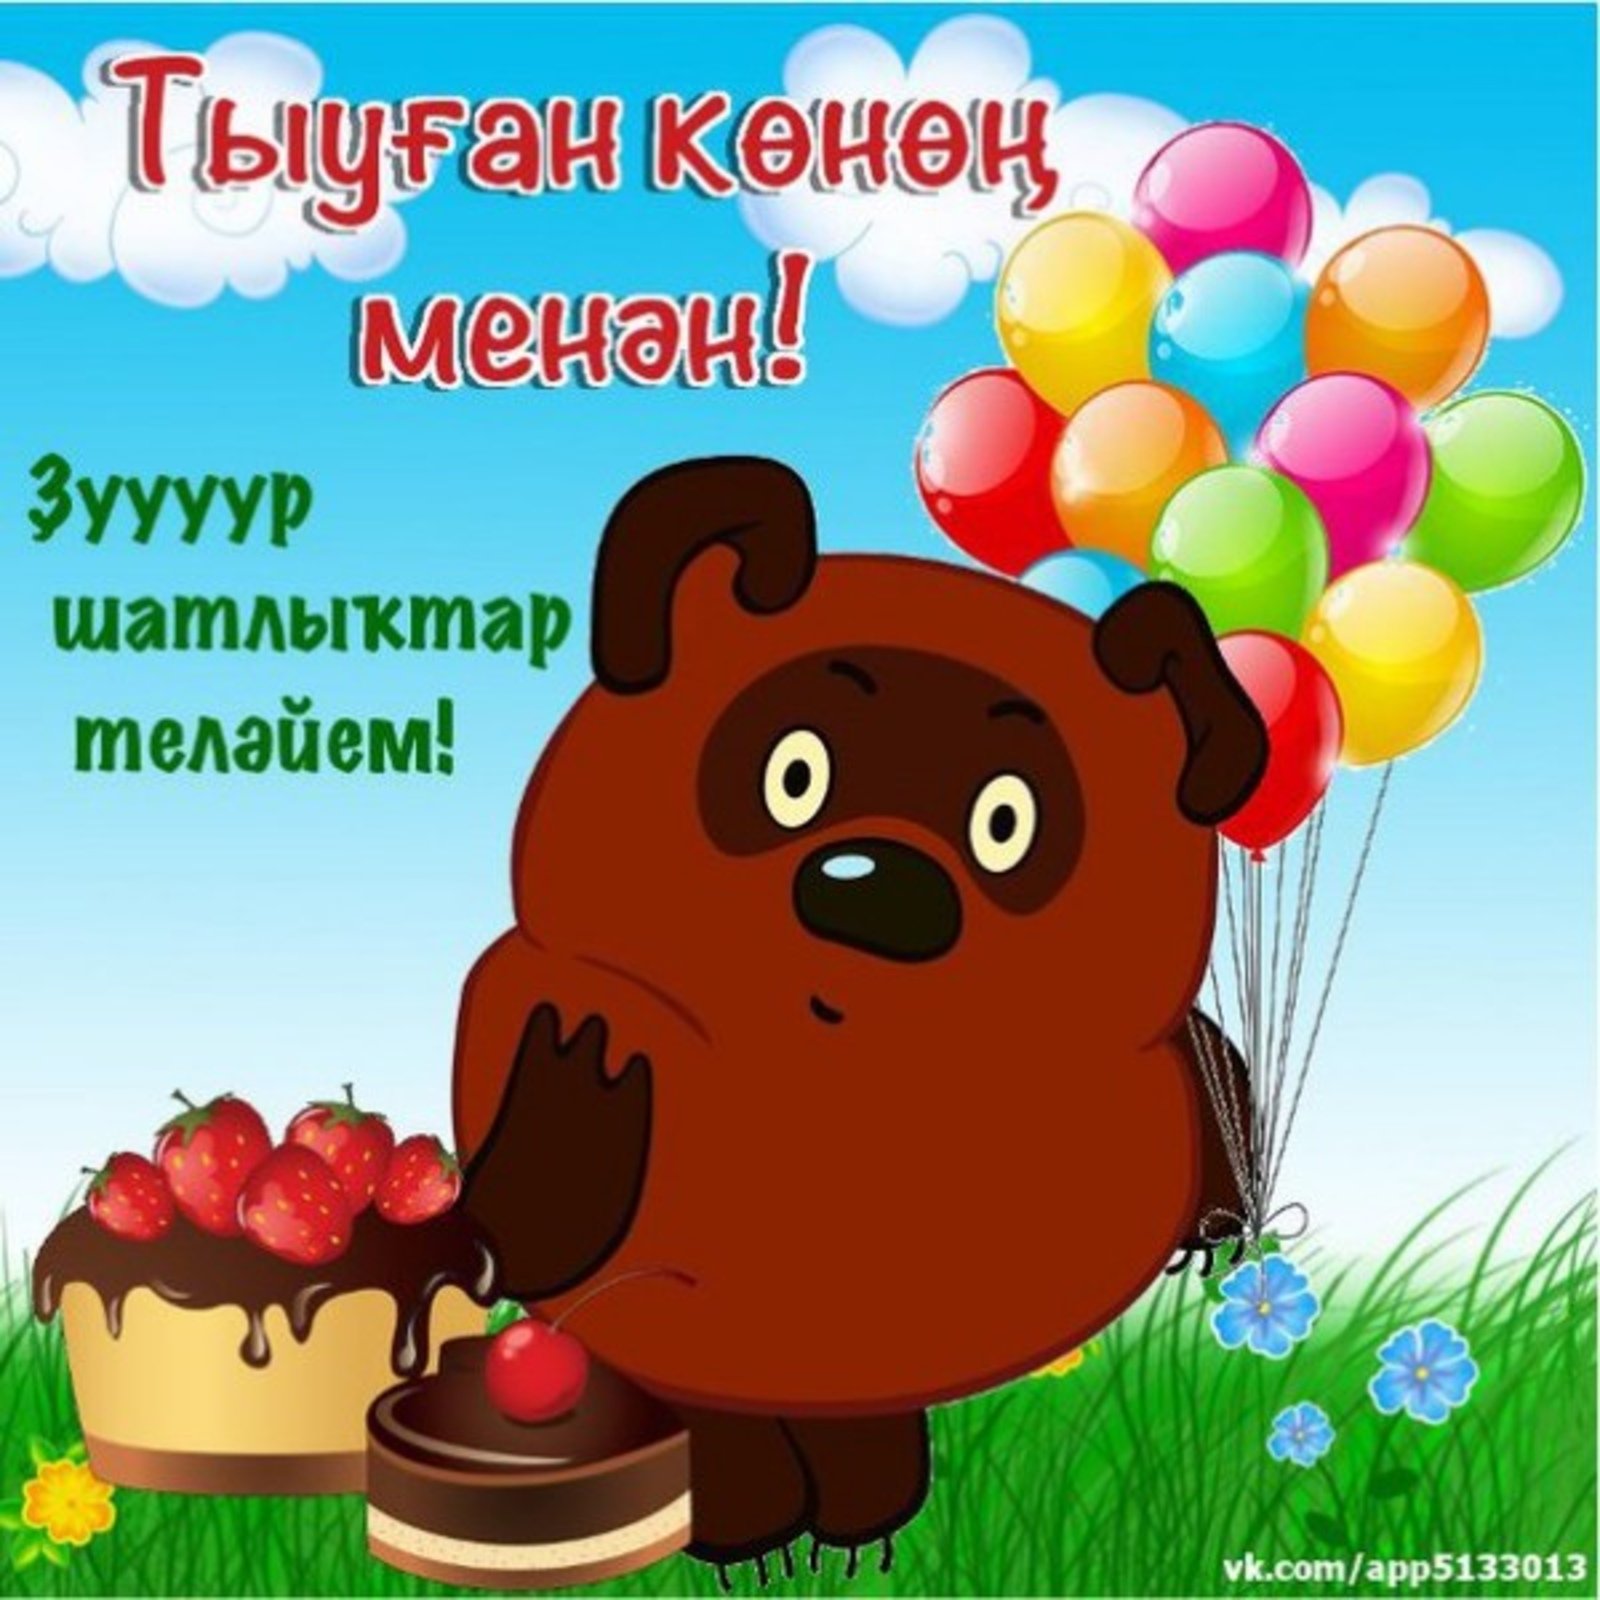 Поздравление на башкирском. Поздравления с днём рождения на башкирском языке. Пожелания с днём рождения на башкирском. Поздравления с днём рождения мужчине на башкирском языке. Поздравления на башкирском языке на юбилей.